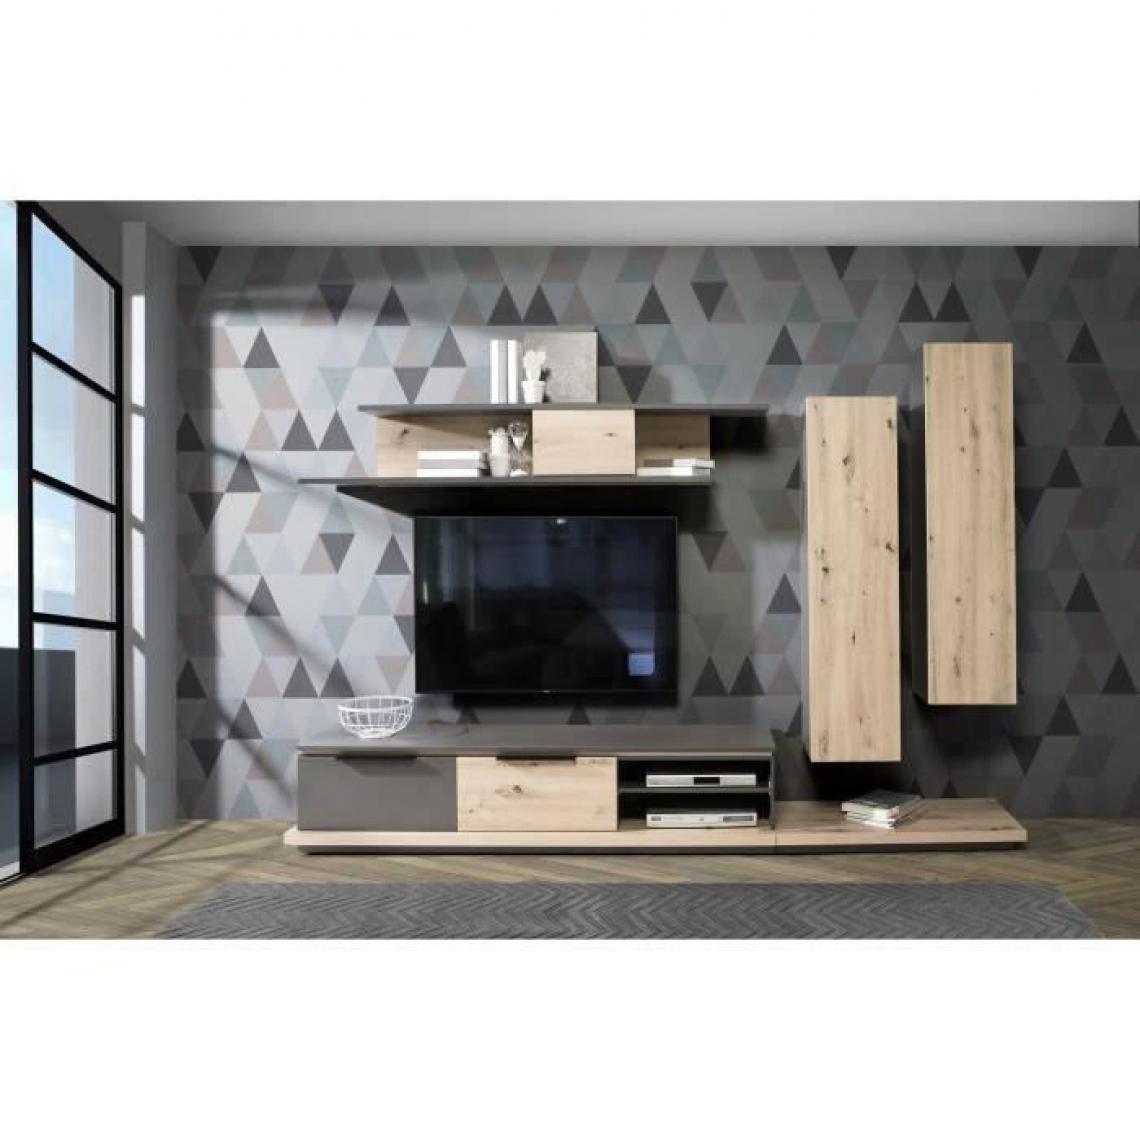 Cstore - CSTORE - ensemble meuble tv - contemporain - Grey star - l 280xp 45xh 178 cm - 3 portes 2 tiroirs - décor chêne et gris - Meubles TV, Hi-Fi